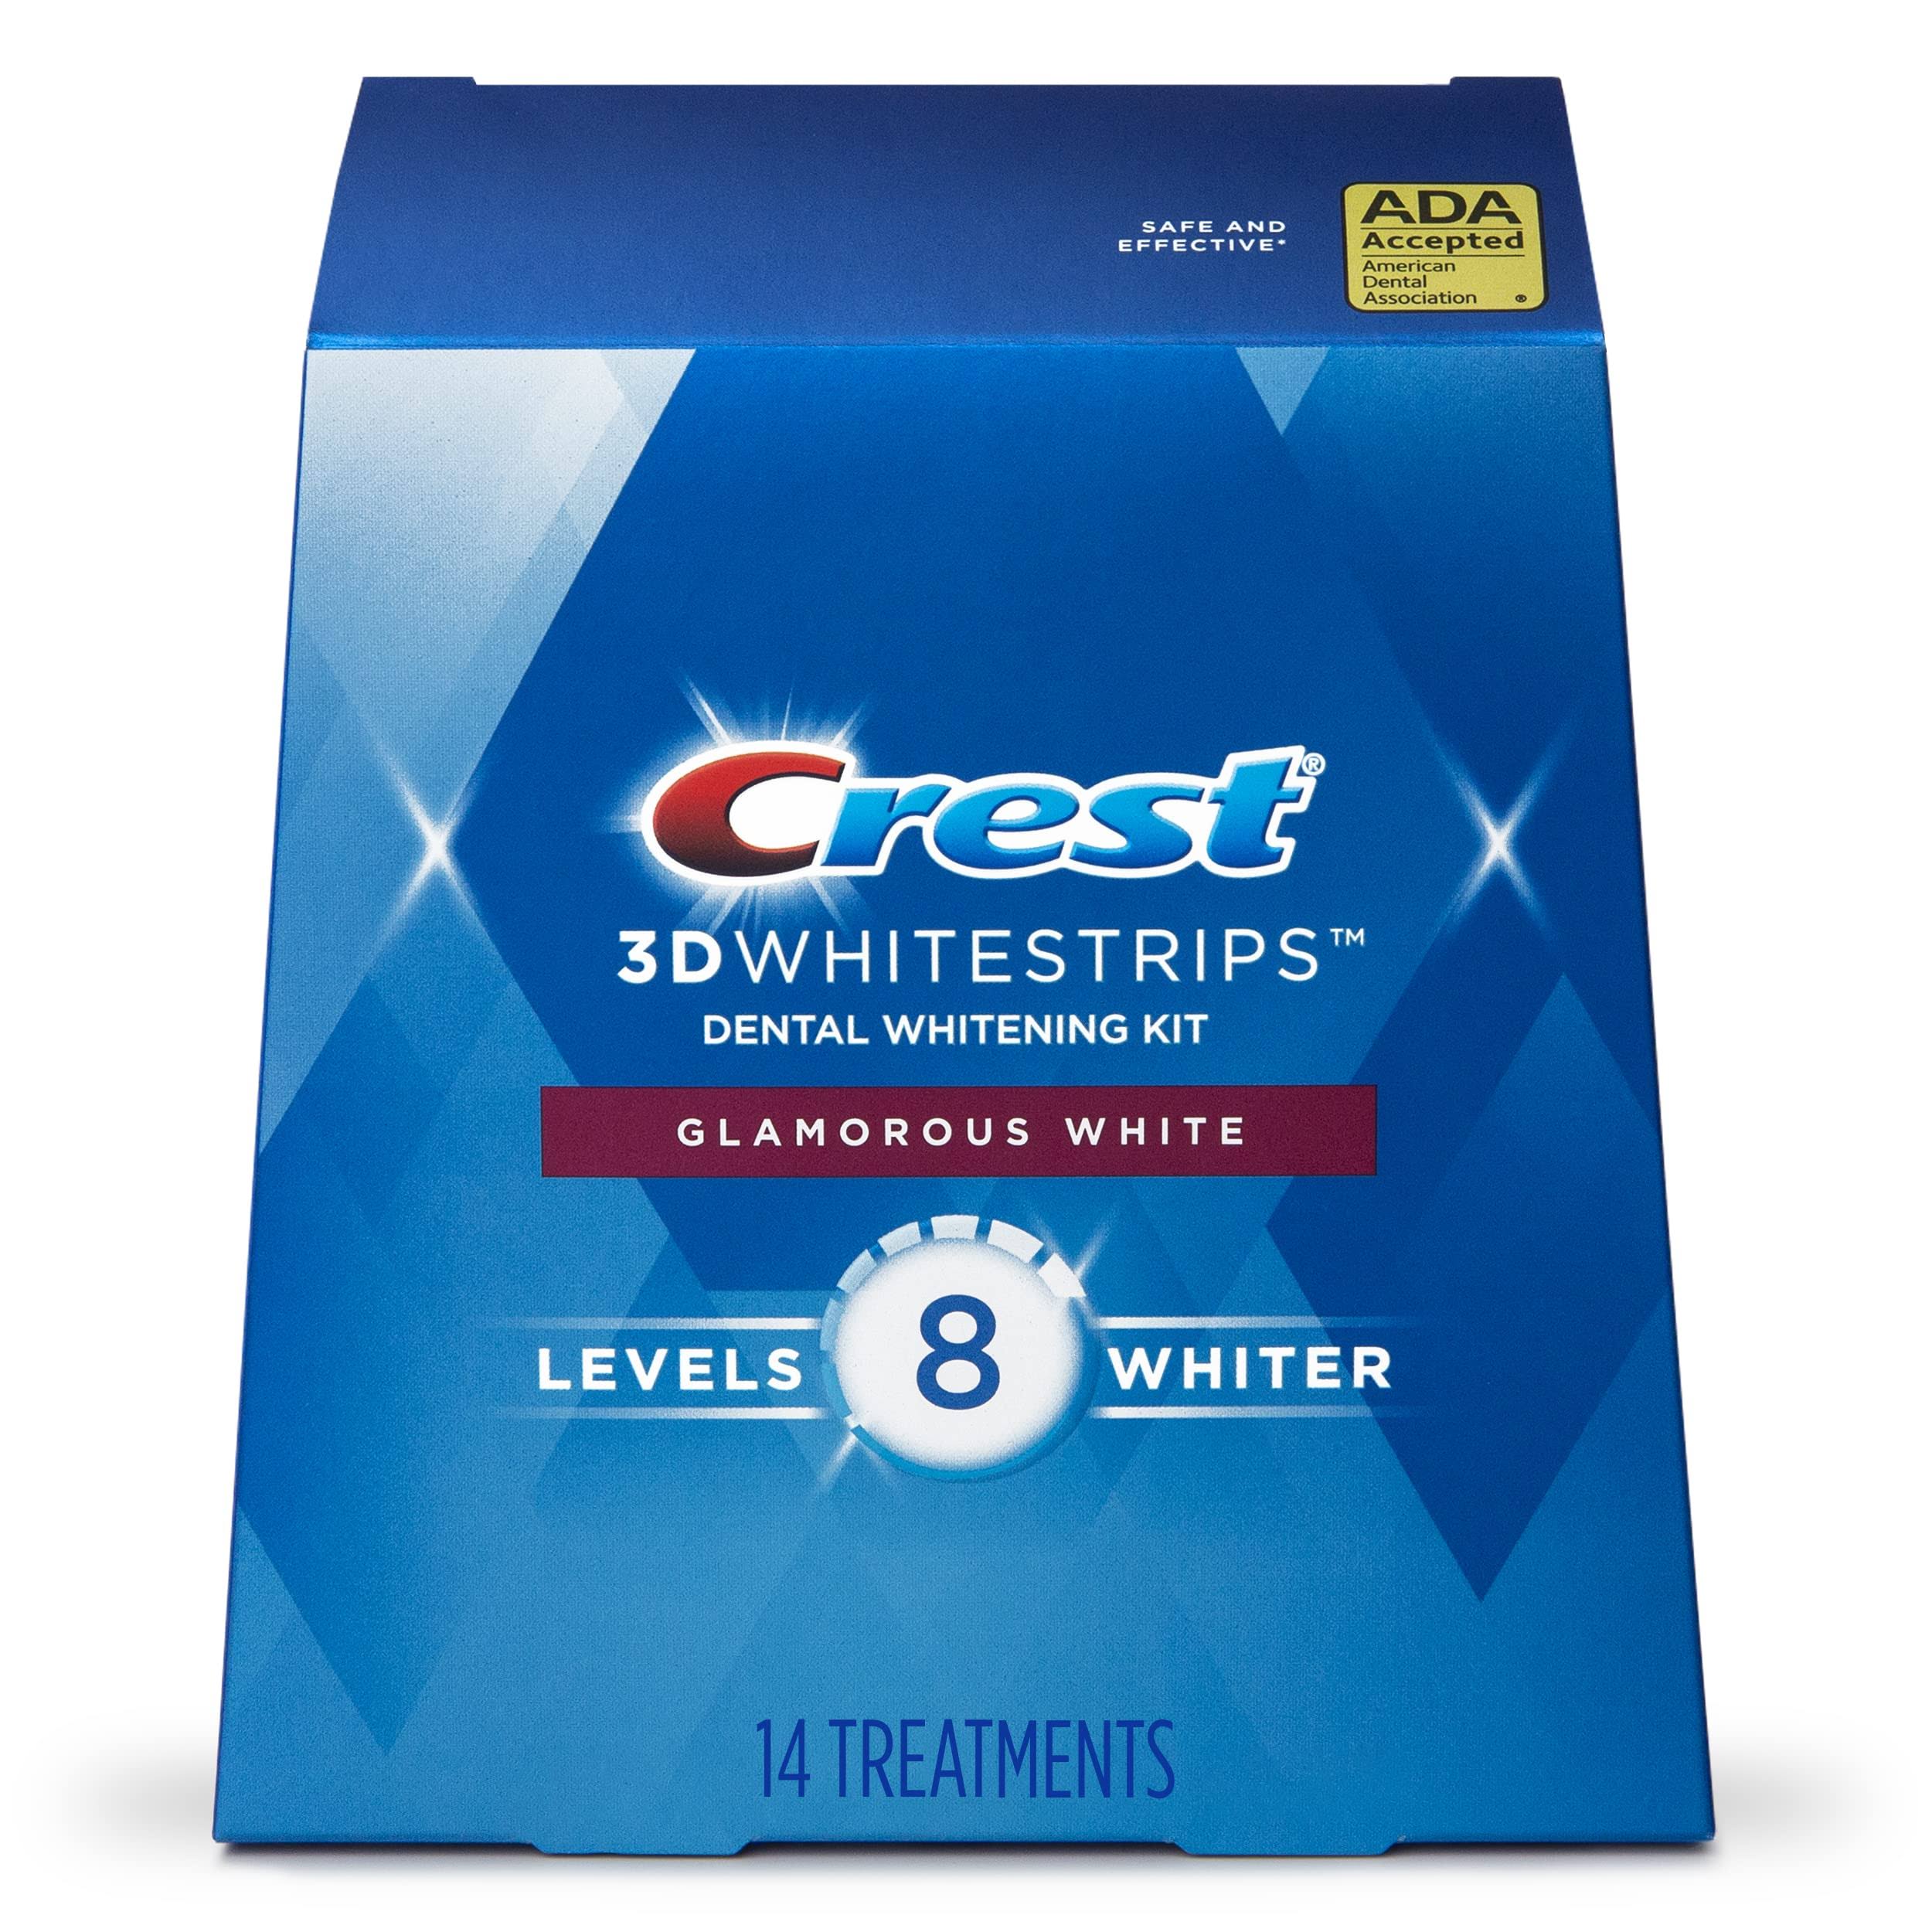 Crest 3D White Whitestrips Glamorous White Dental Whitening Kit - 28pk